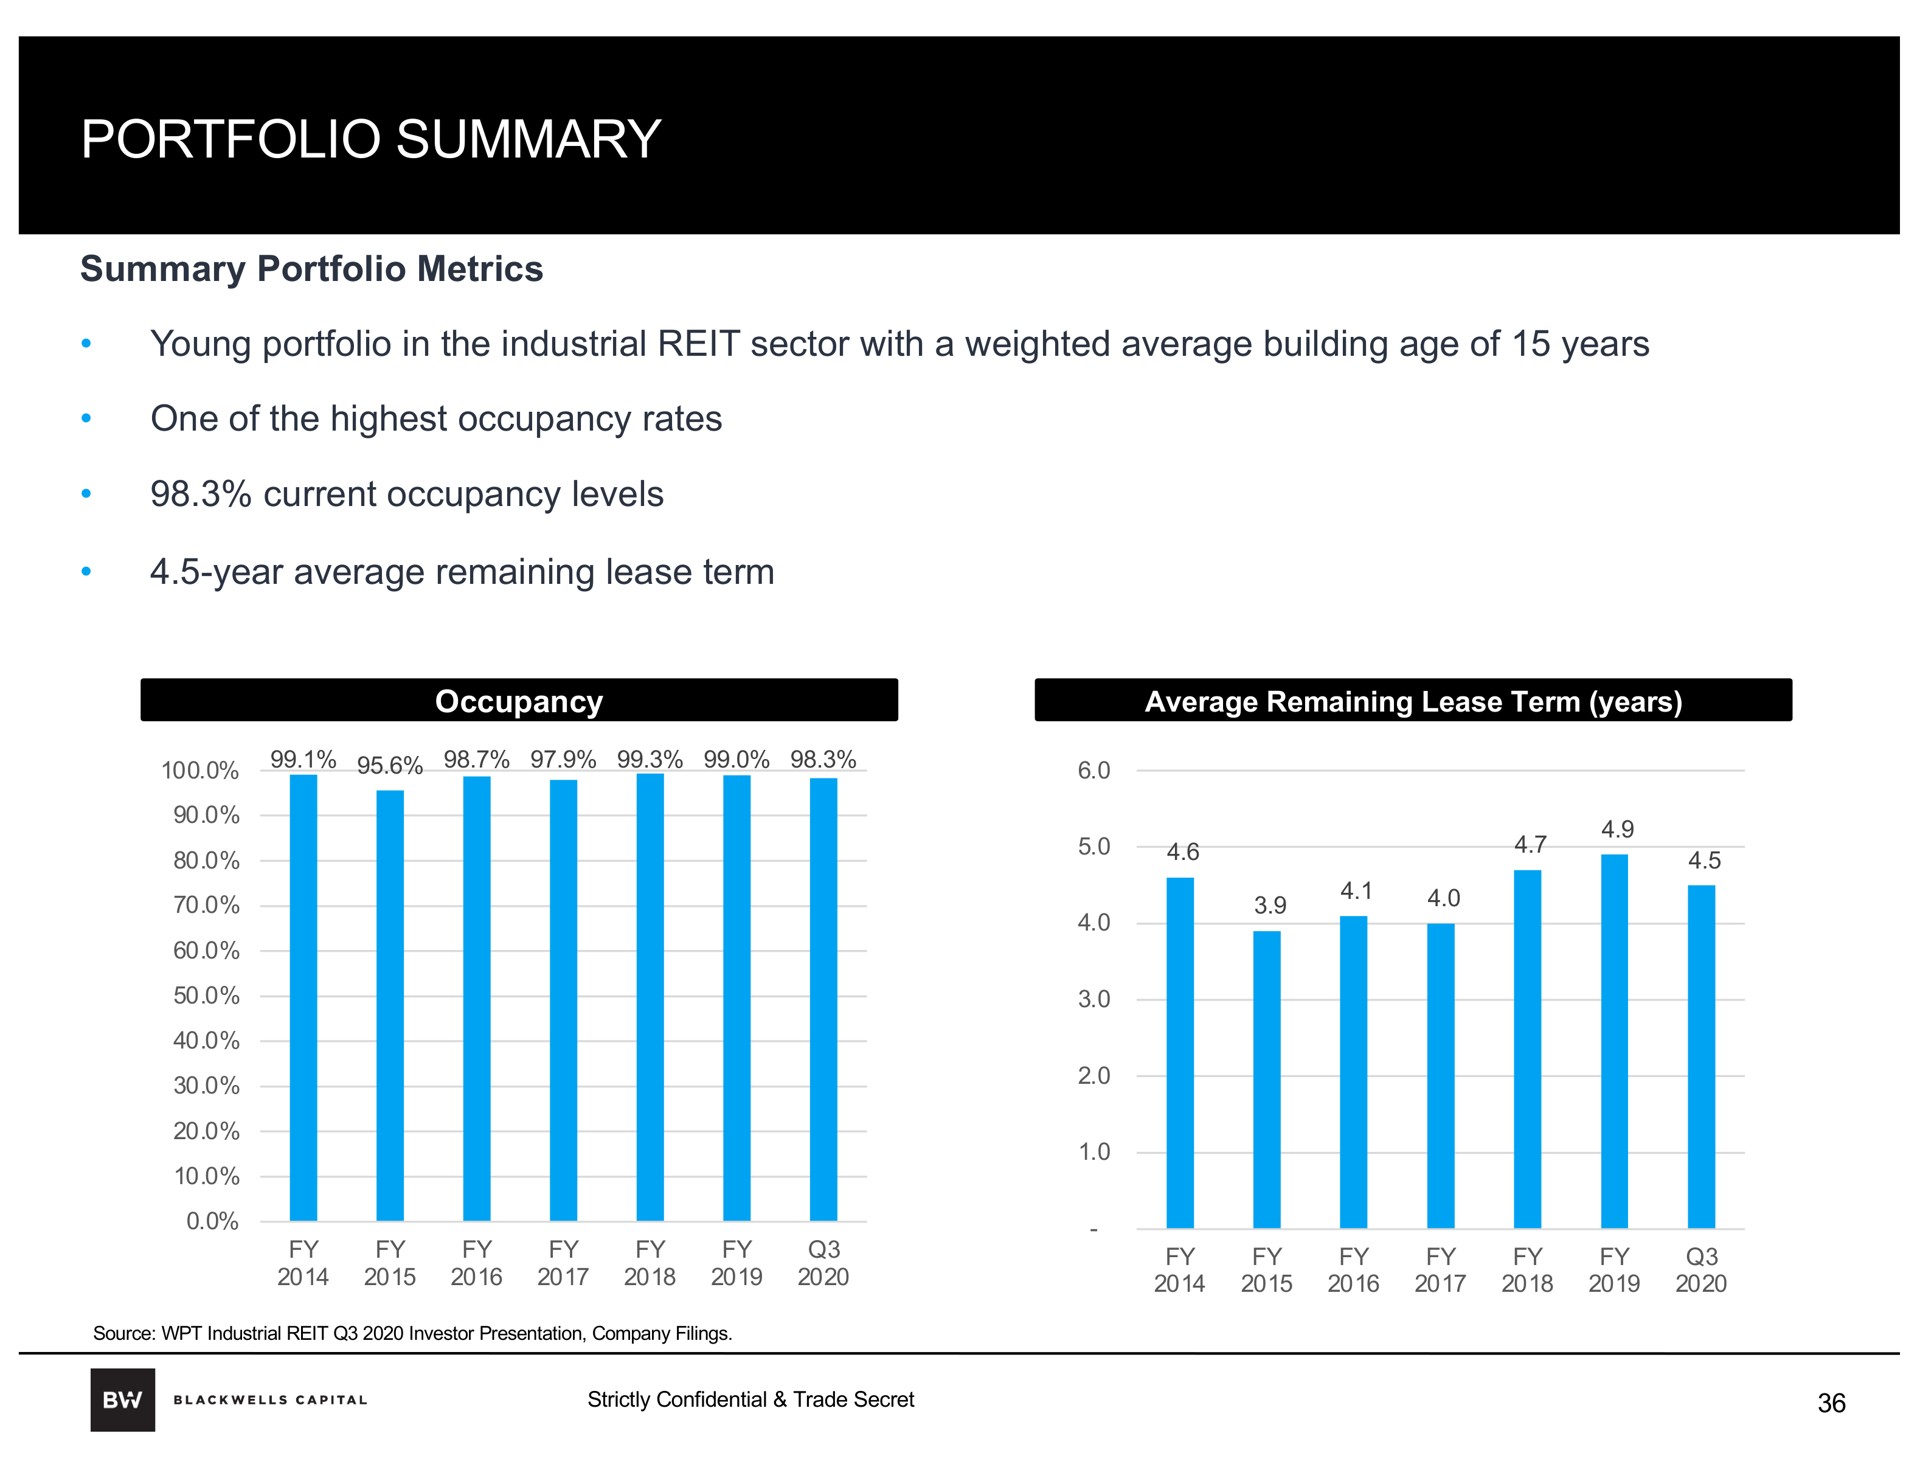 portfolio summary average remaining lease term years | Blackwells Capital